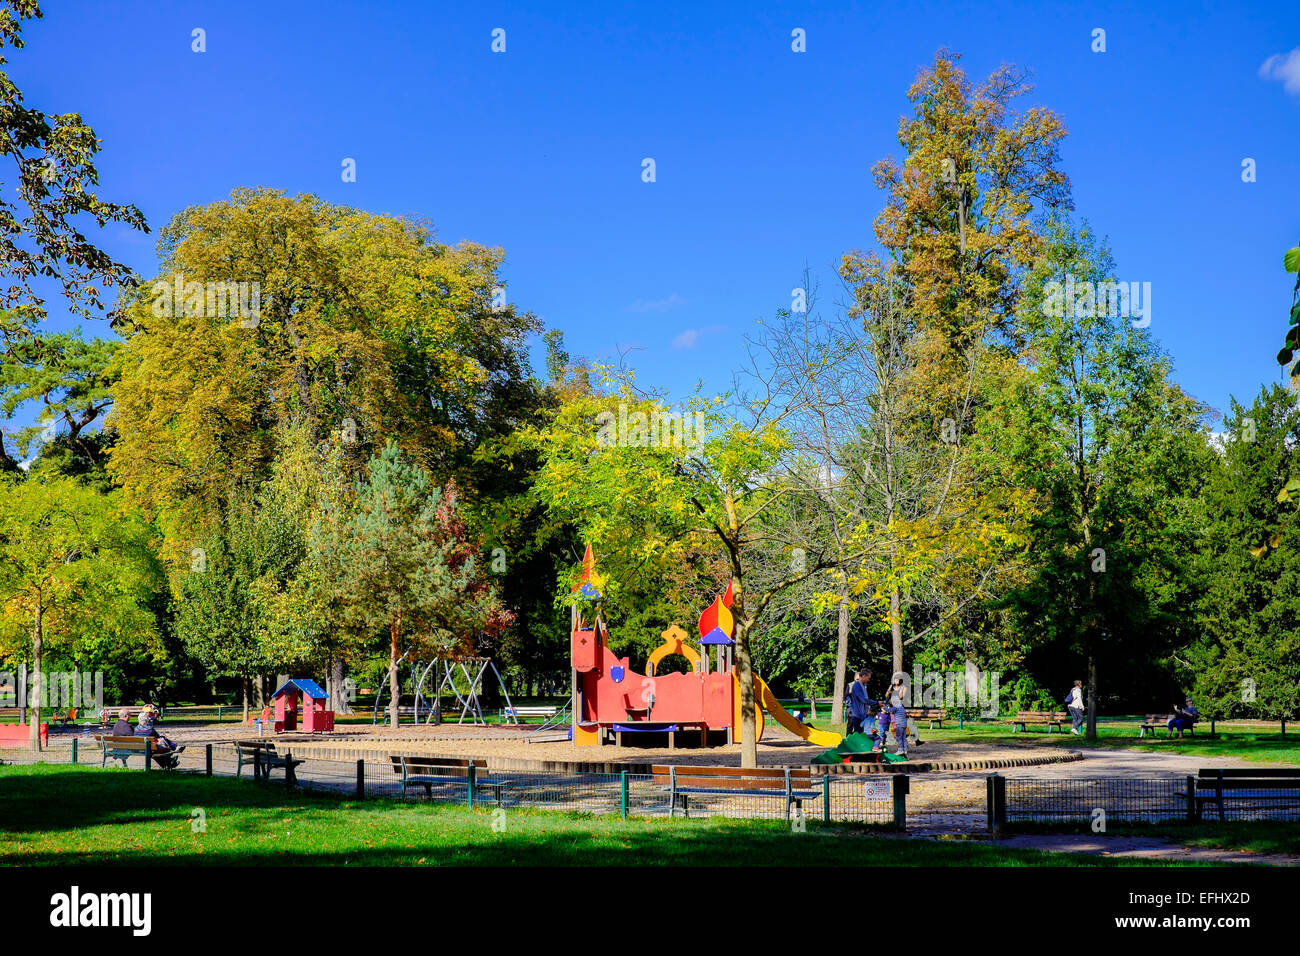 Jeux pour enfants, Parc de l'Orangerie parc, Strasbourg, Alsace, France, Europe Banque D'Images